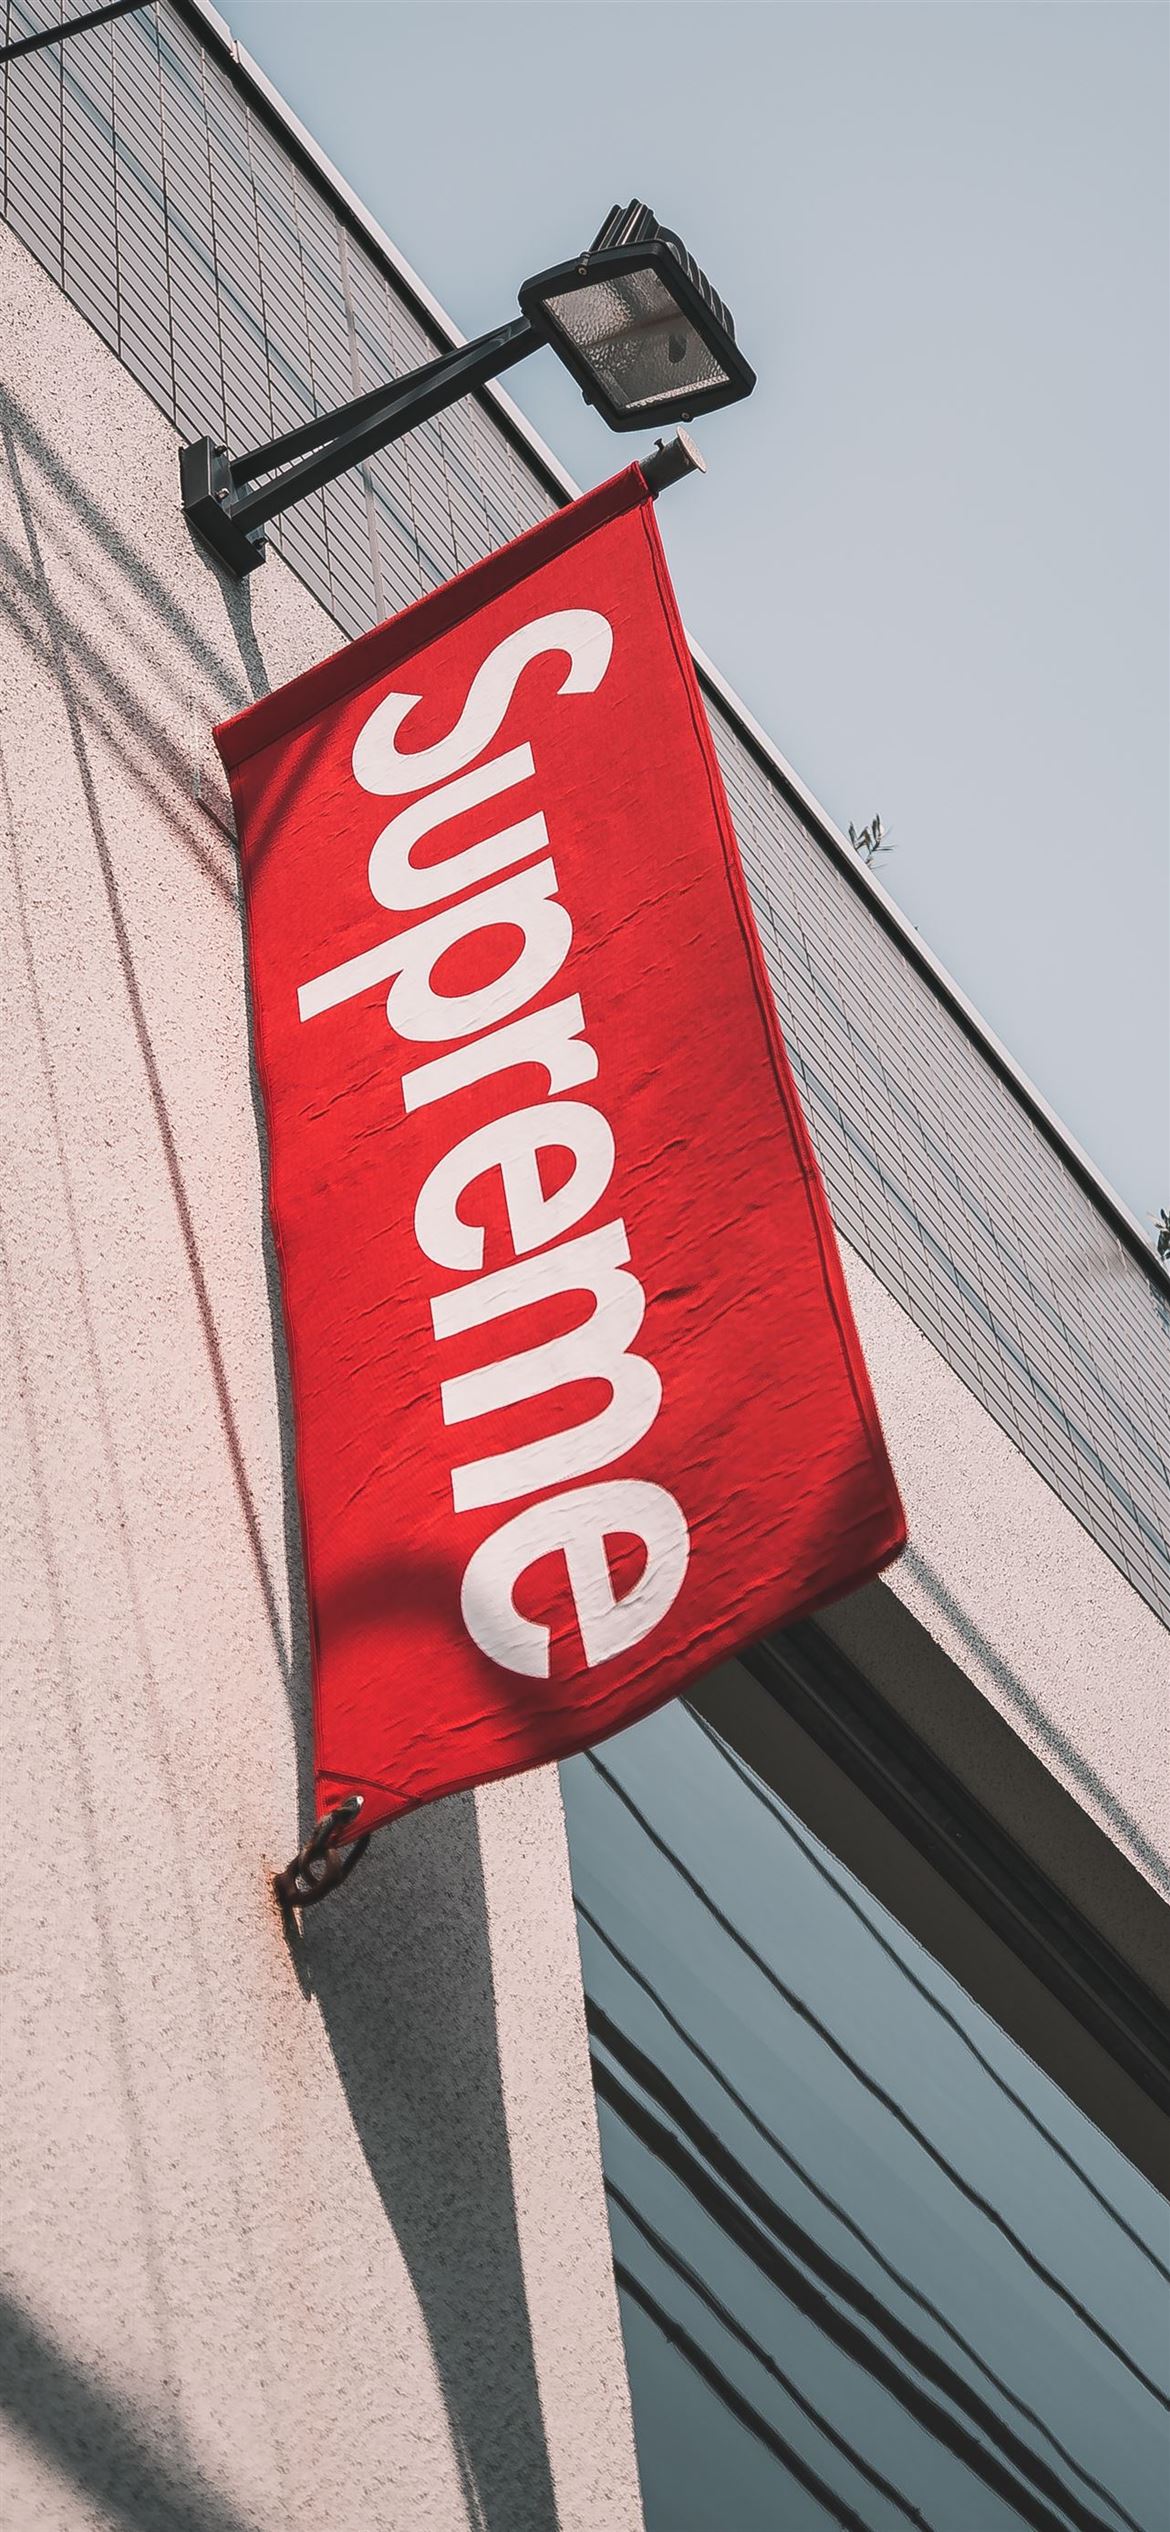 Supreme logo on a red flag - Supreme